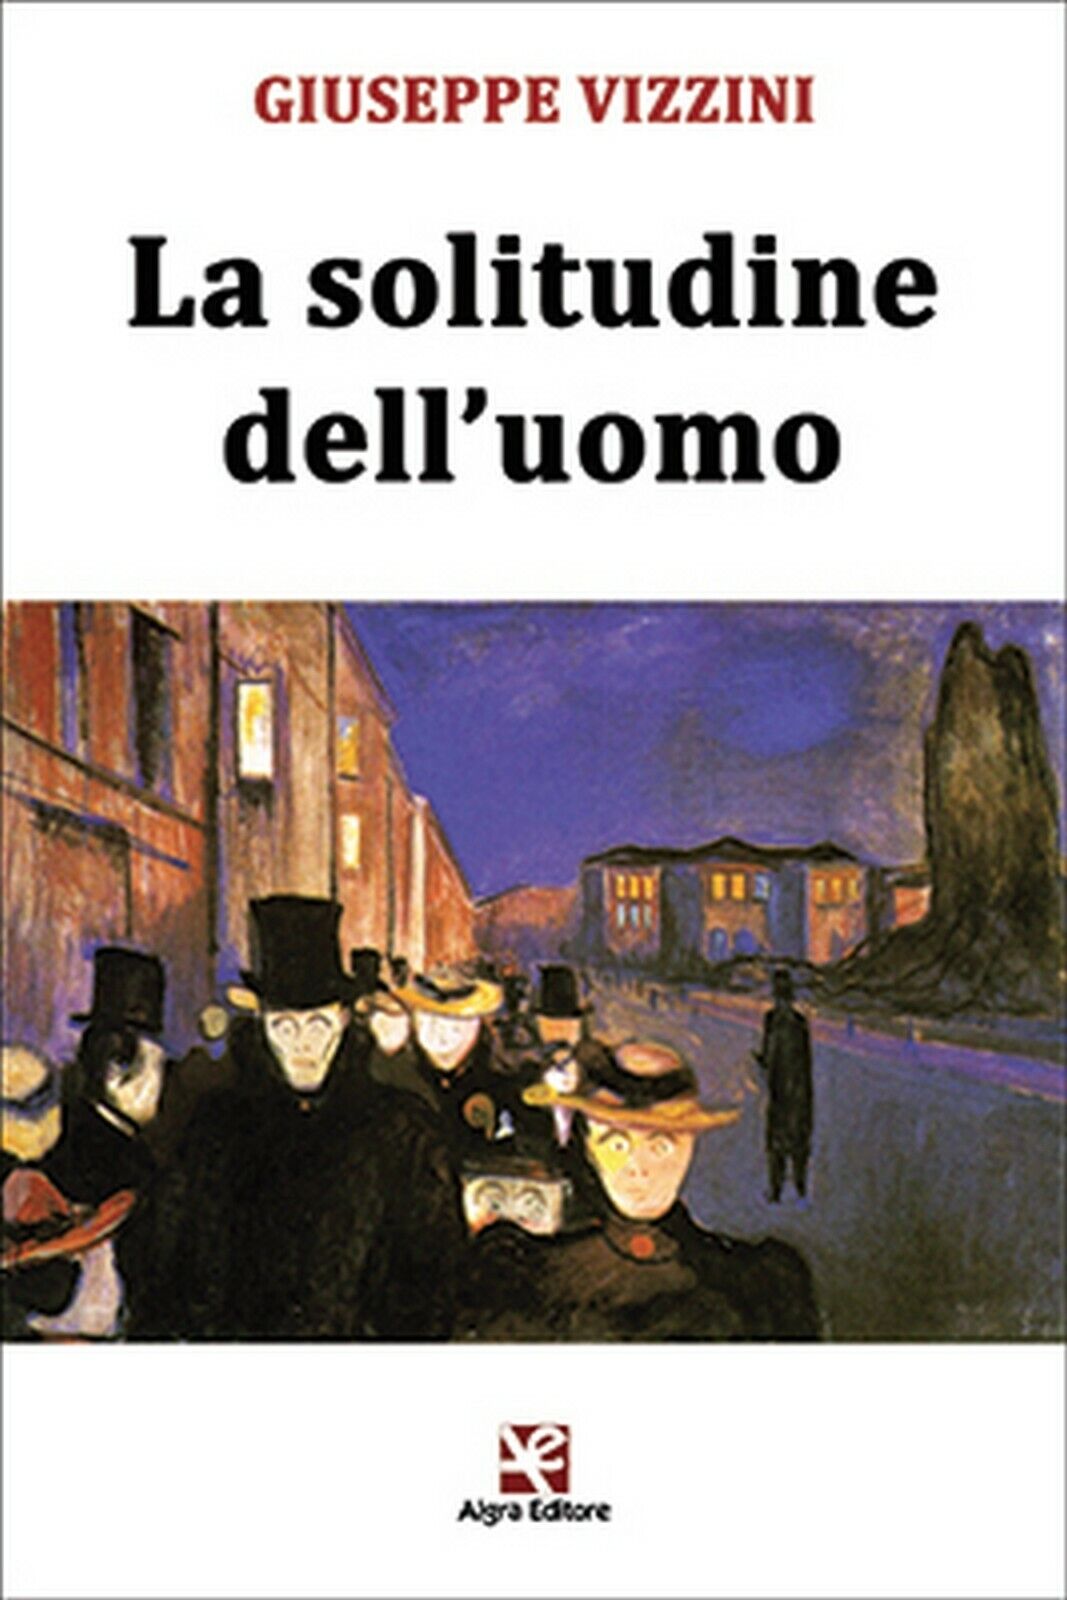 La solitudine delL'uomo  di Giuseppe Vizzini,  Algra Editore